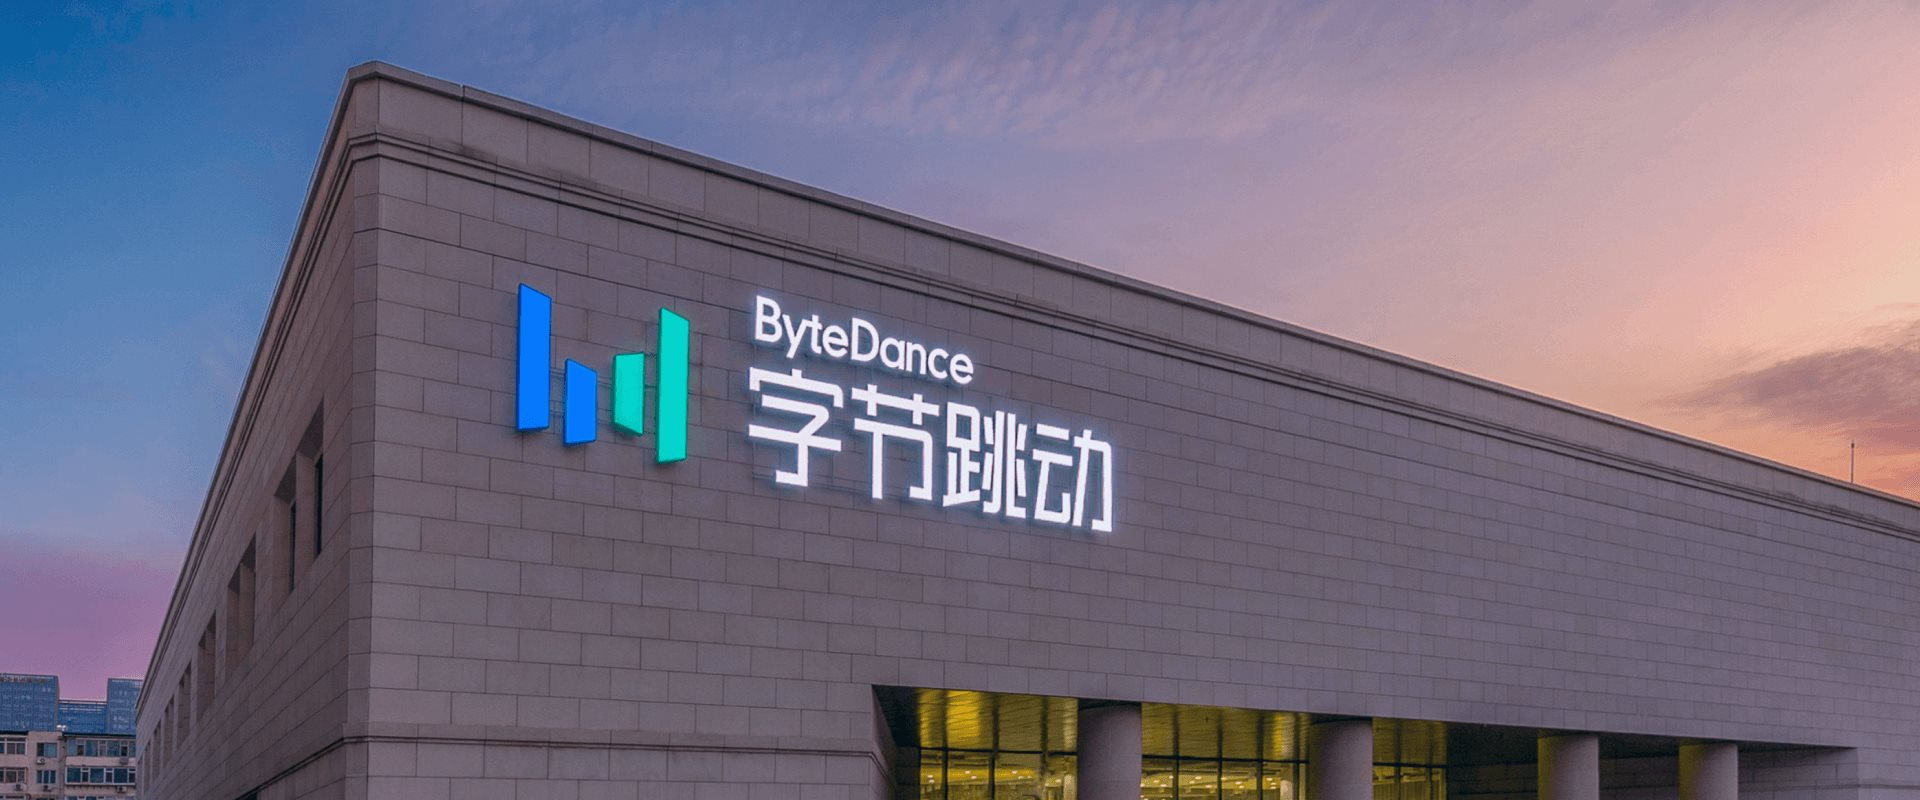 Chấn động lời khai của cựu nhân viên ByteDance: Công ty tham gia ‘kế hoạch toàn cầu’ để đánh cắp nội dung và thu lợi - Ảnh 2.